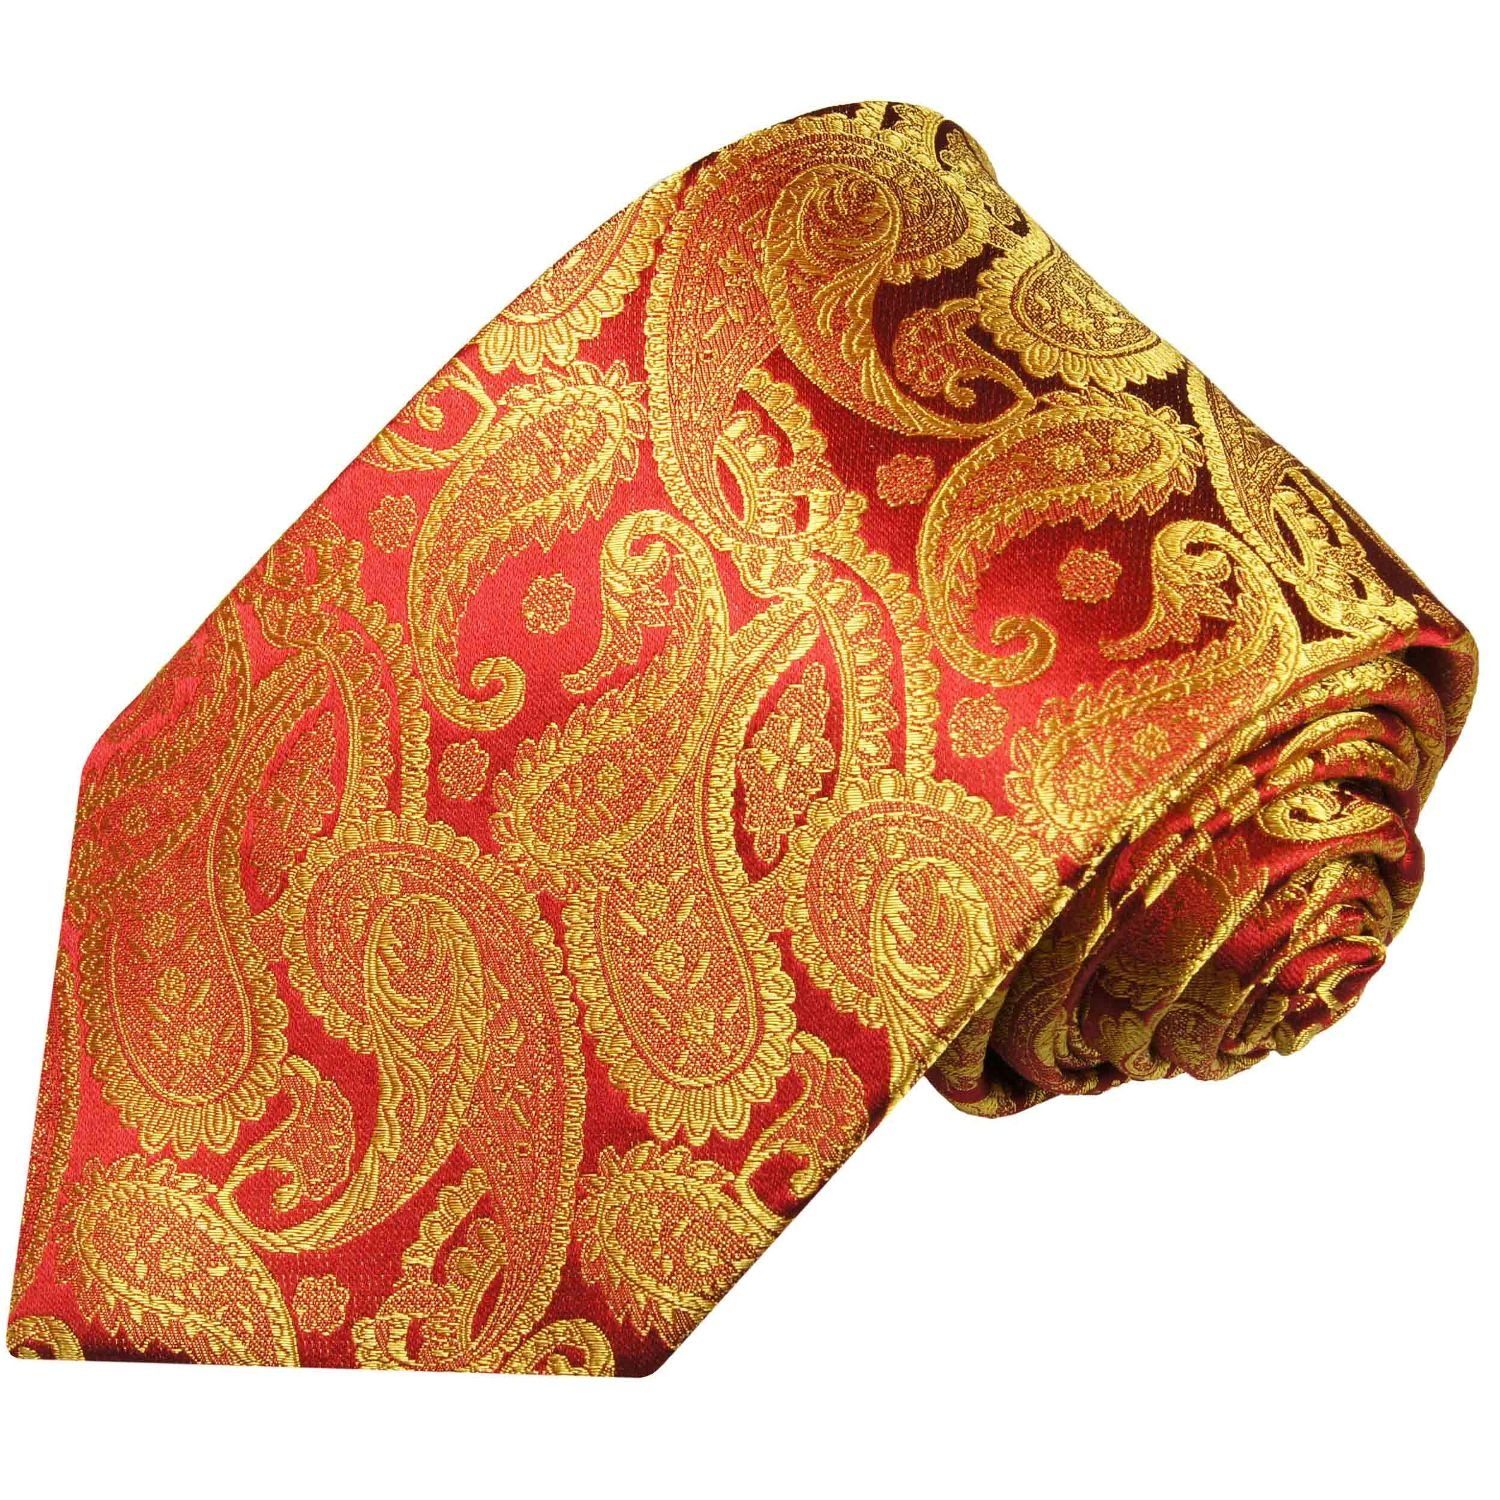 Paul Malone Krawatte Elegante Seidenkrawatte Herren Schlips paisley brokat 100% Seide Schmal (6cm), rot gold 695